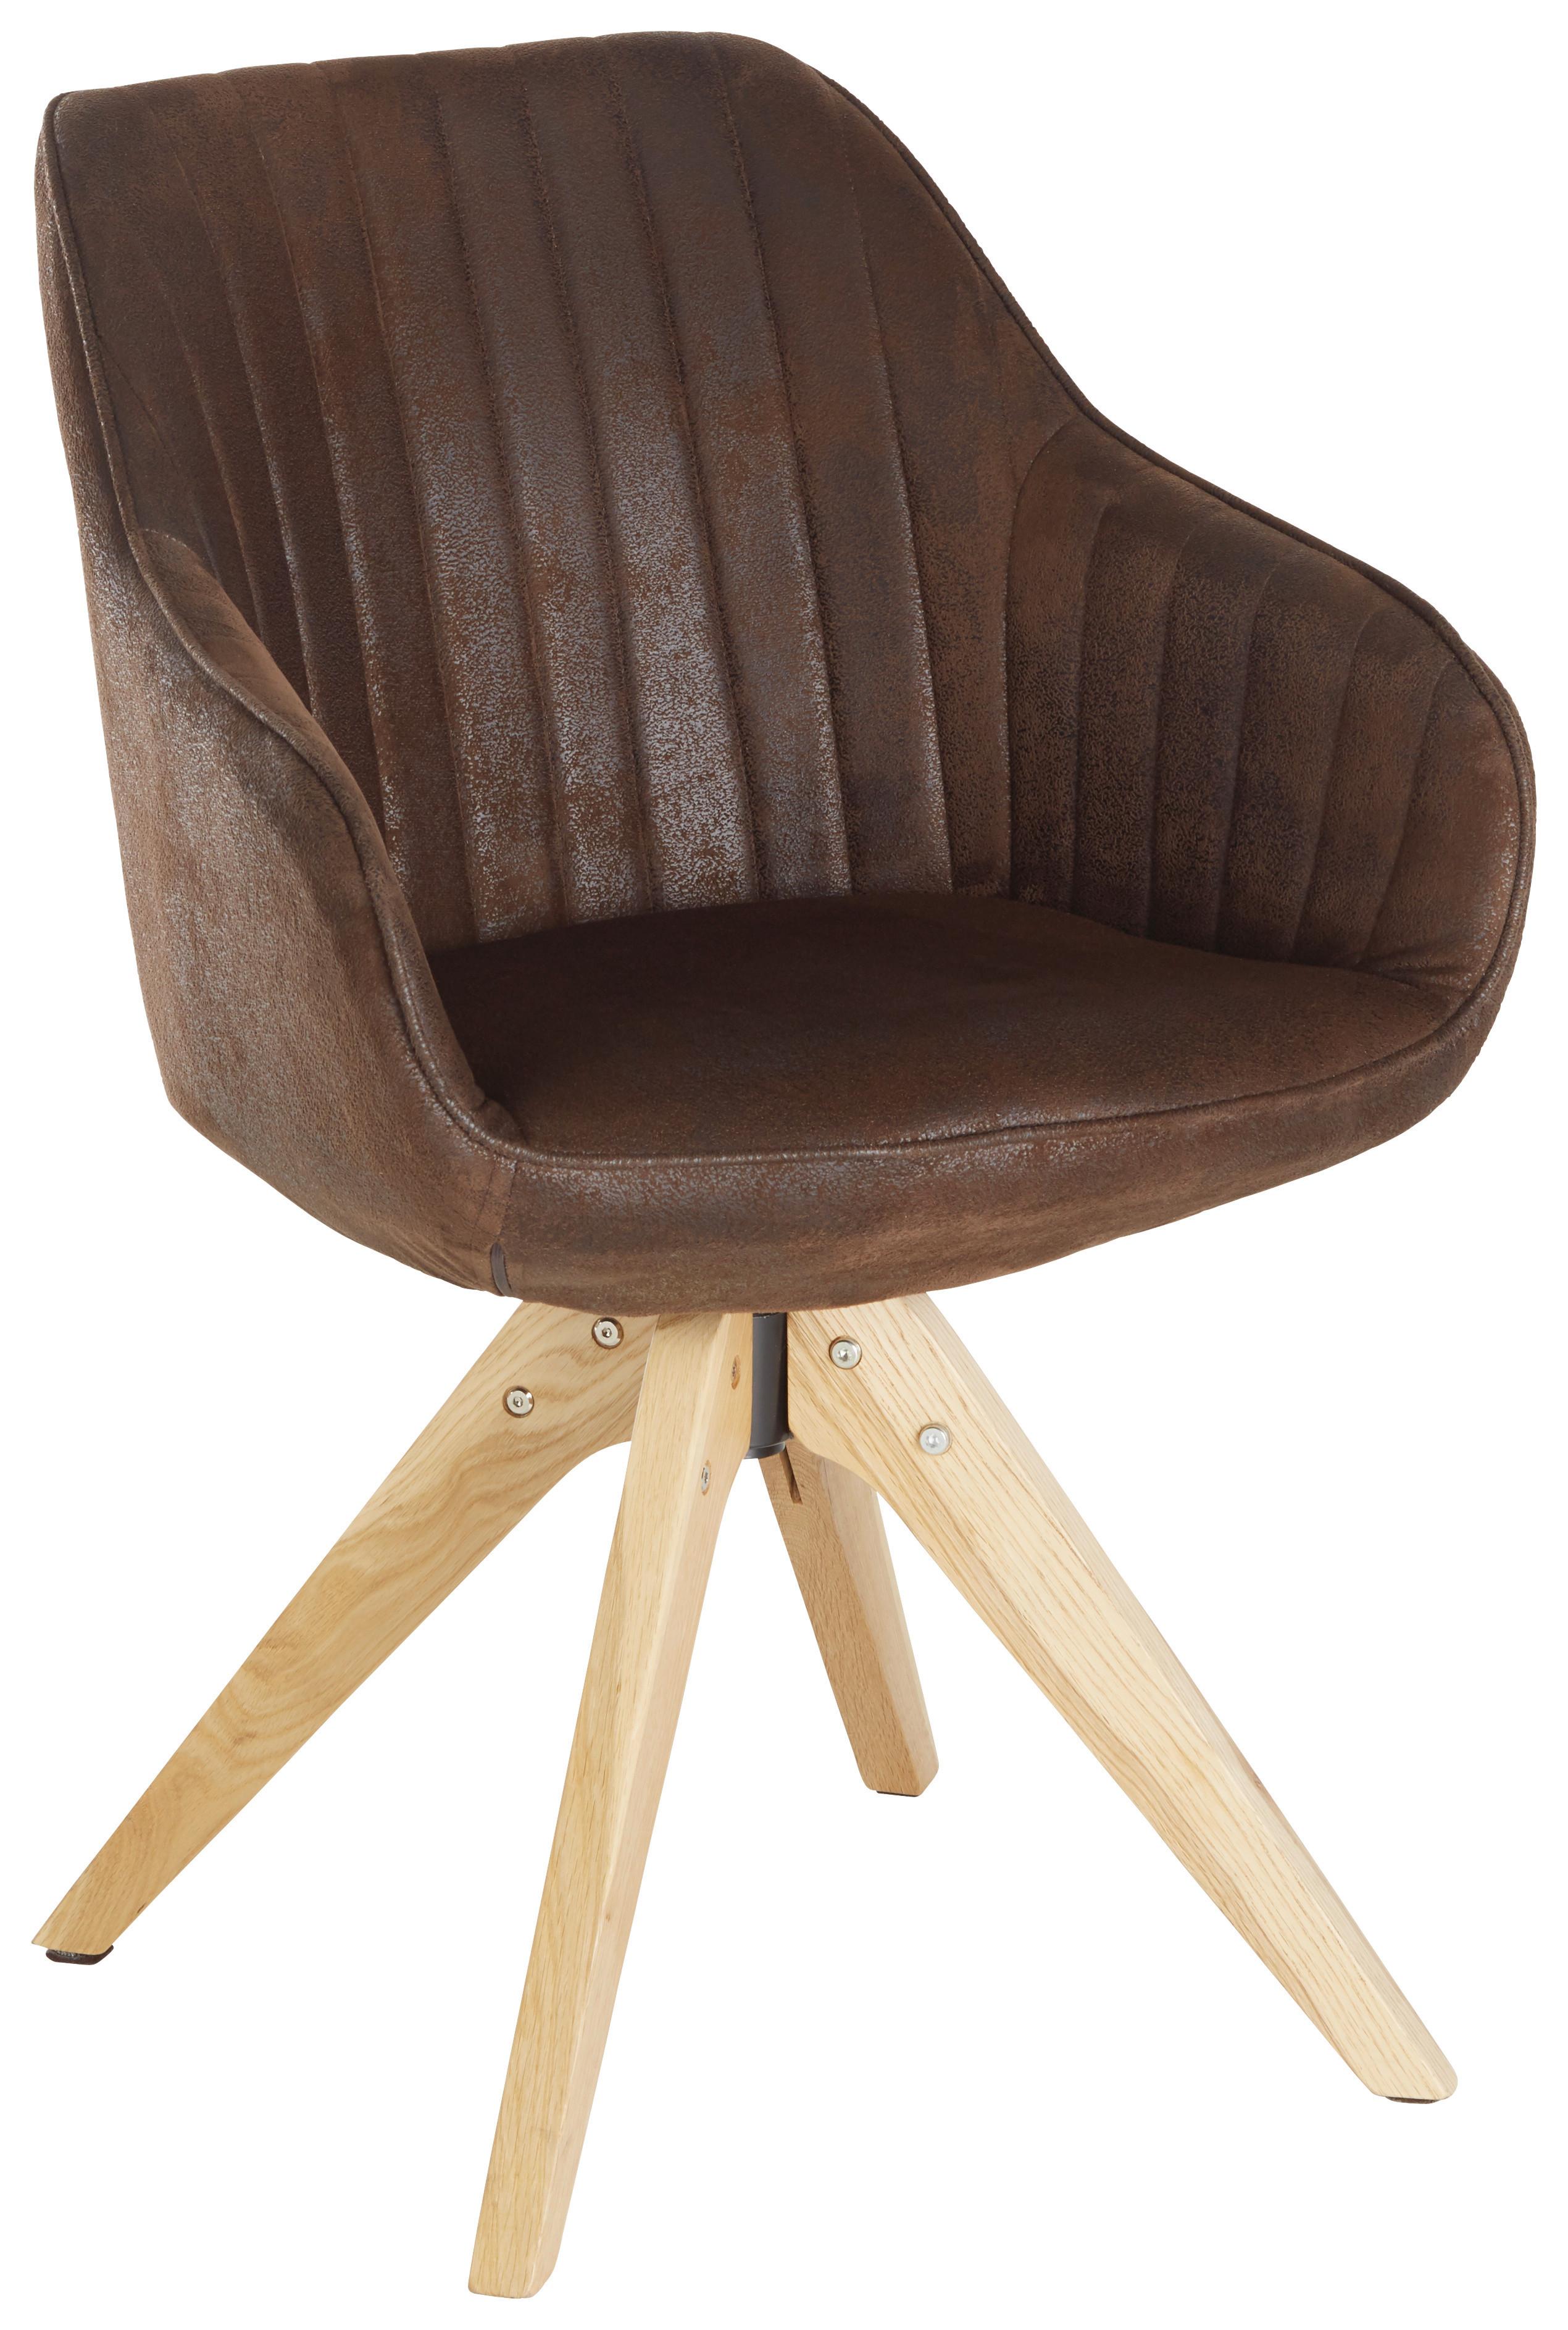 Stol Chill, Temno Rjava - barve hrasta/temno rjava, tekstil/les (60/83/65cm) - Premium Living